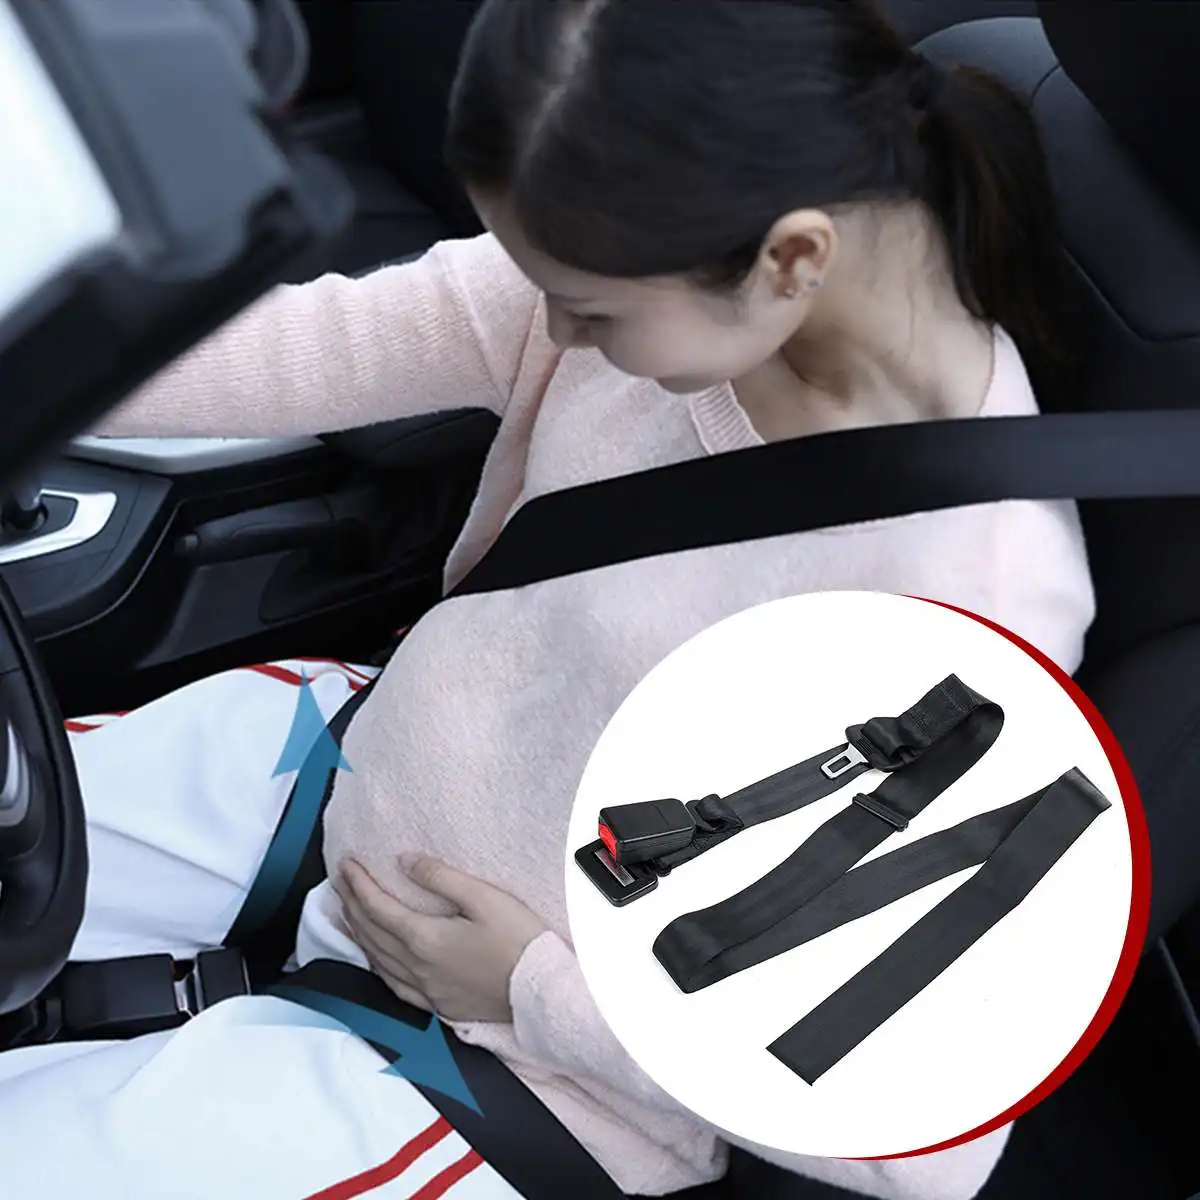 

Ремень безопасности для беременных, автомобильный ремень безопасности для беременных и будущих мам, регулирующий Удобный безопасный защит...